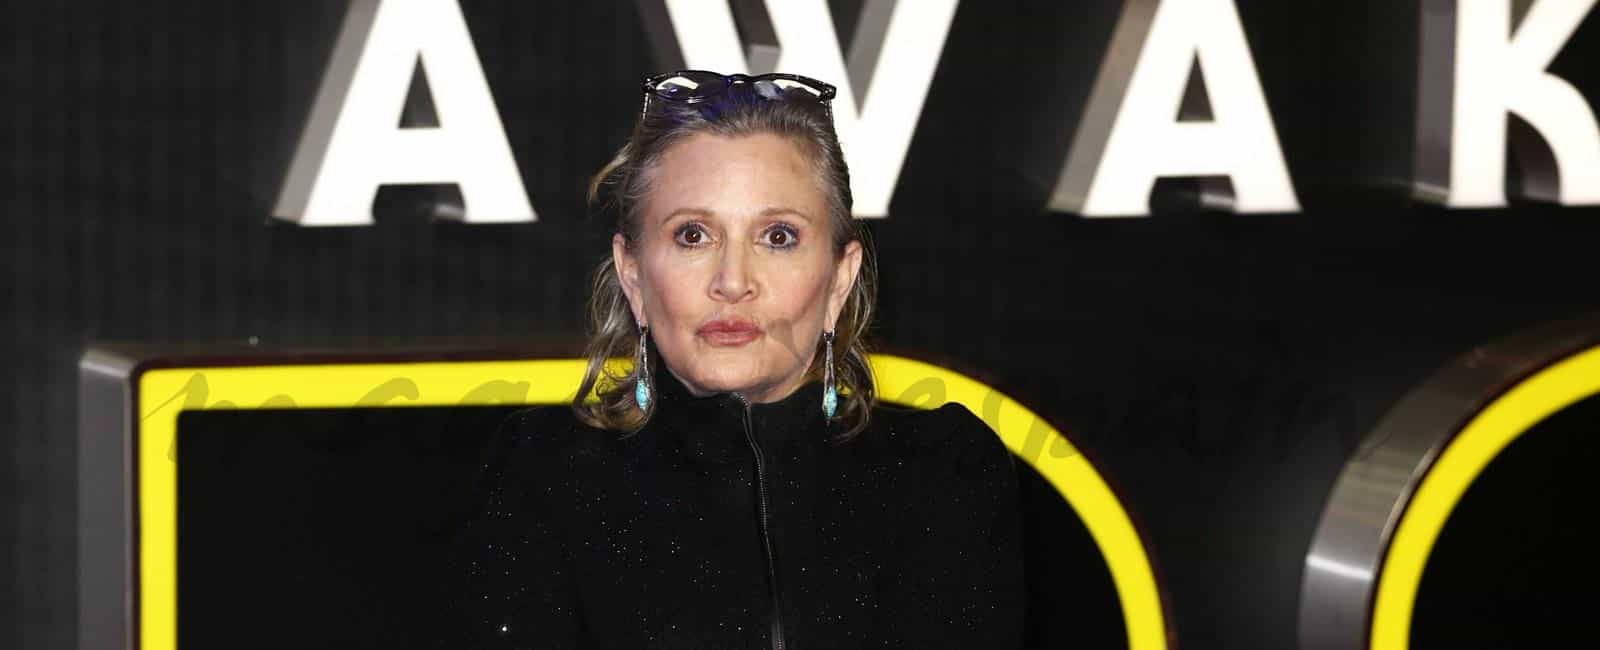 Carrie Fisher, la princesa Leia de La guerra de las galaxias, en estado crítico